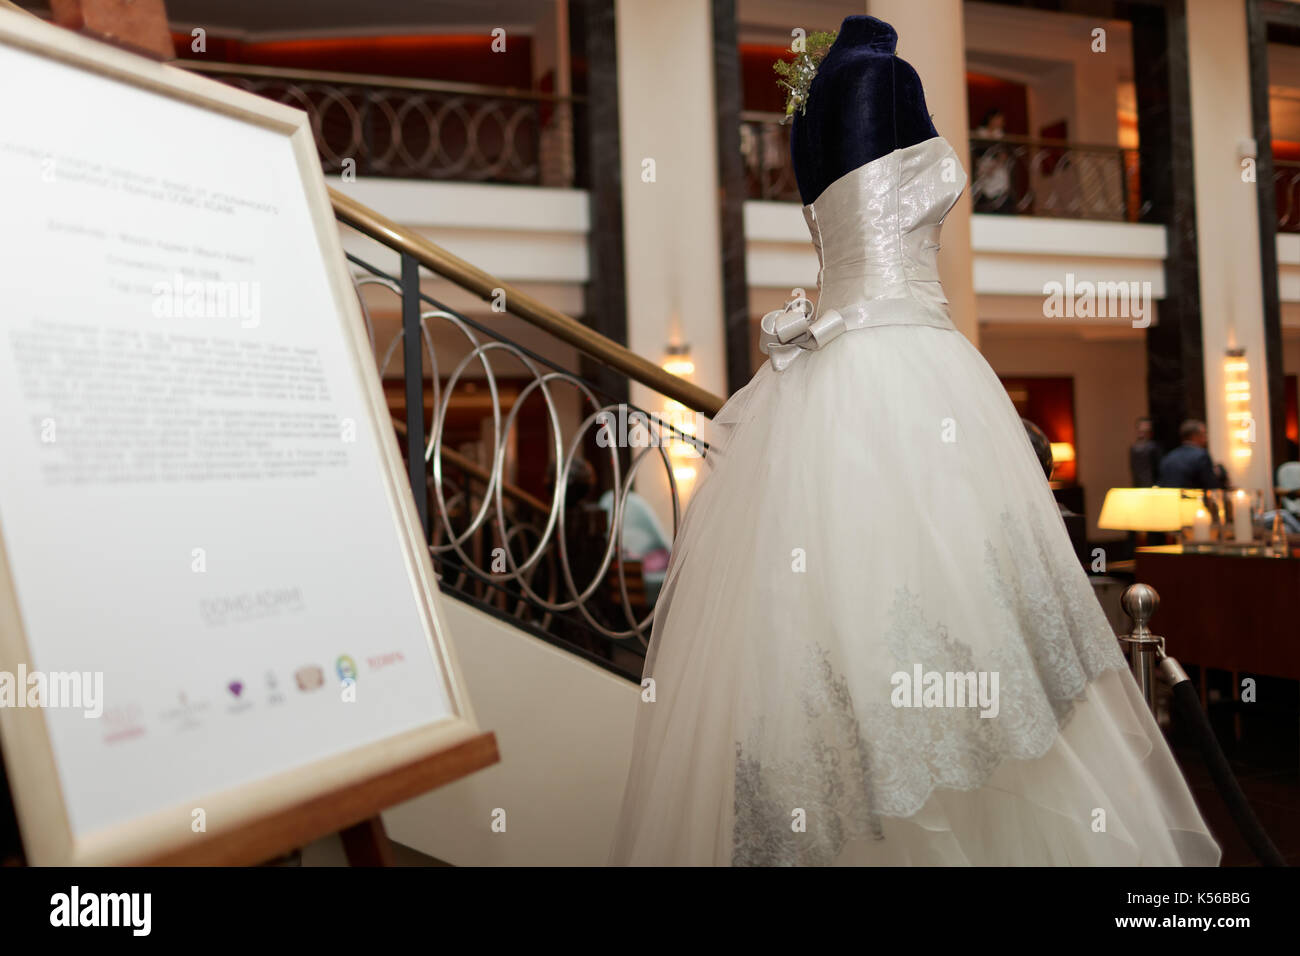 Saint-pétersbourg, Russie - 9 octobre, 2015 : robe de mariage platine conçu par Mauro Adami exposées dans l'hôtel Corinthia. La robe d'une valeur de 400 000 wil Banque D'Images